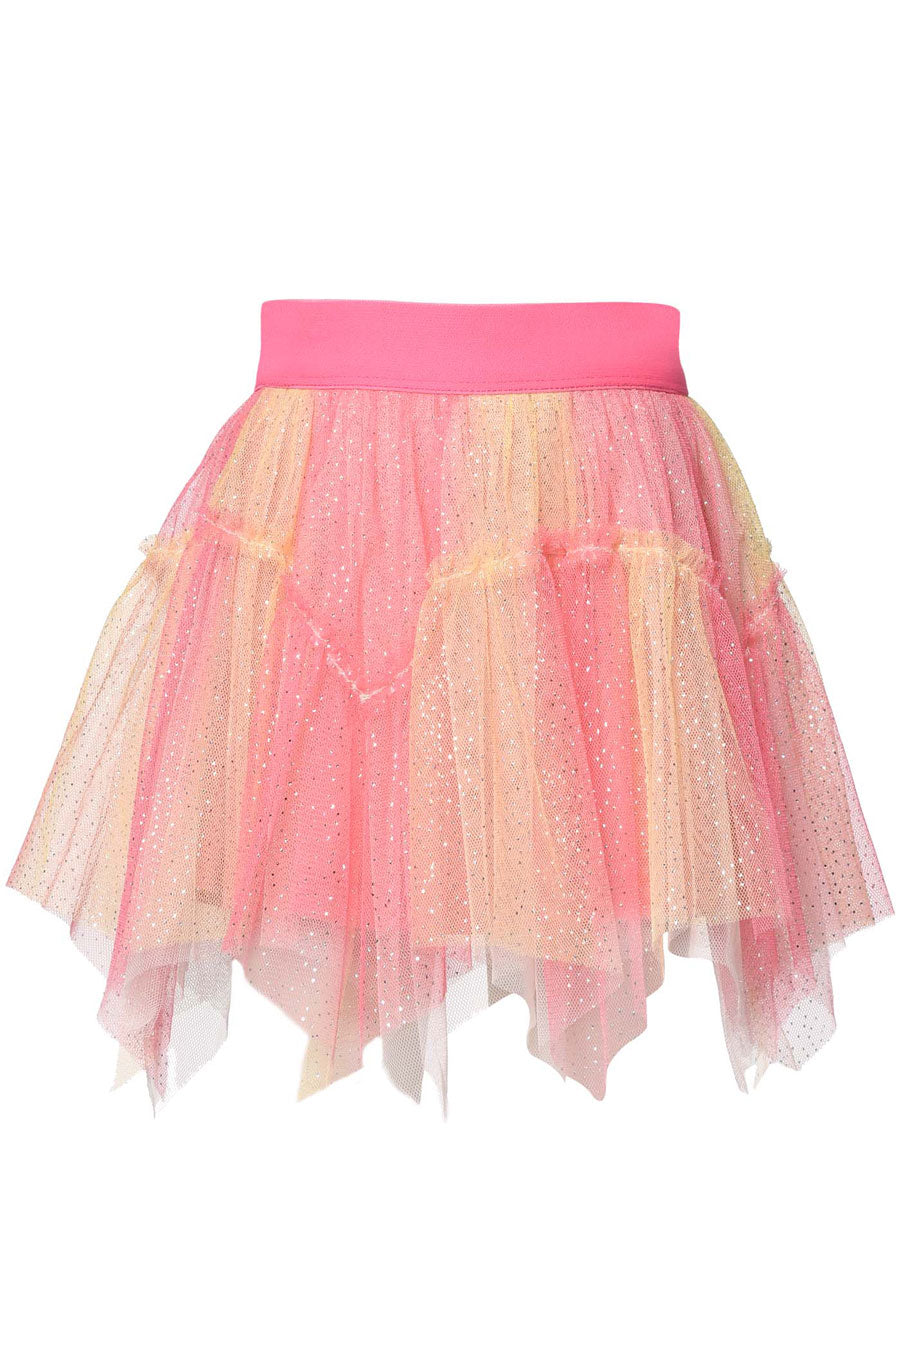 Mesh Tutu Hanky Hem Skirt for Girls